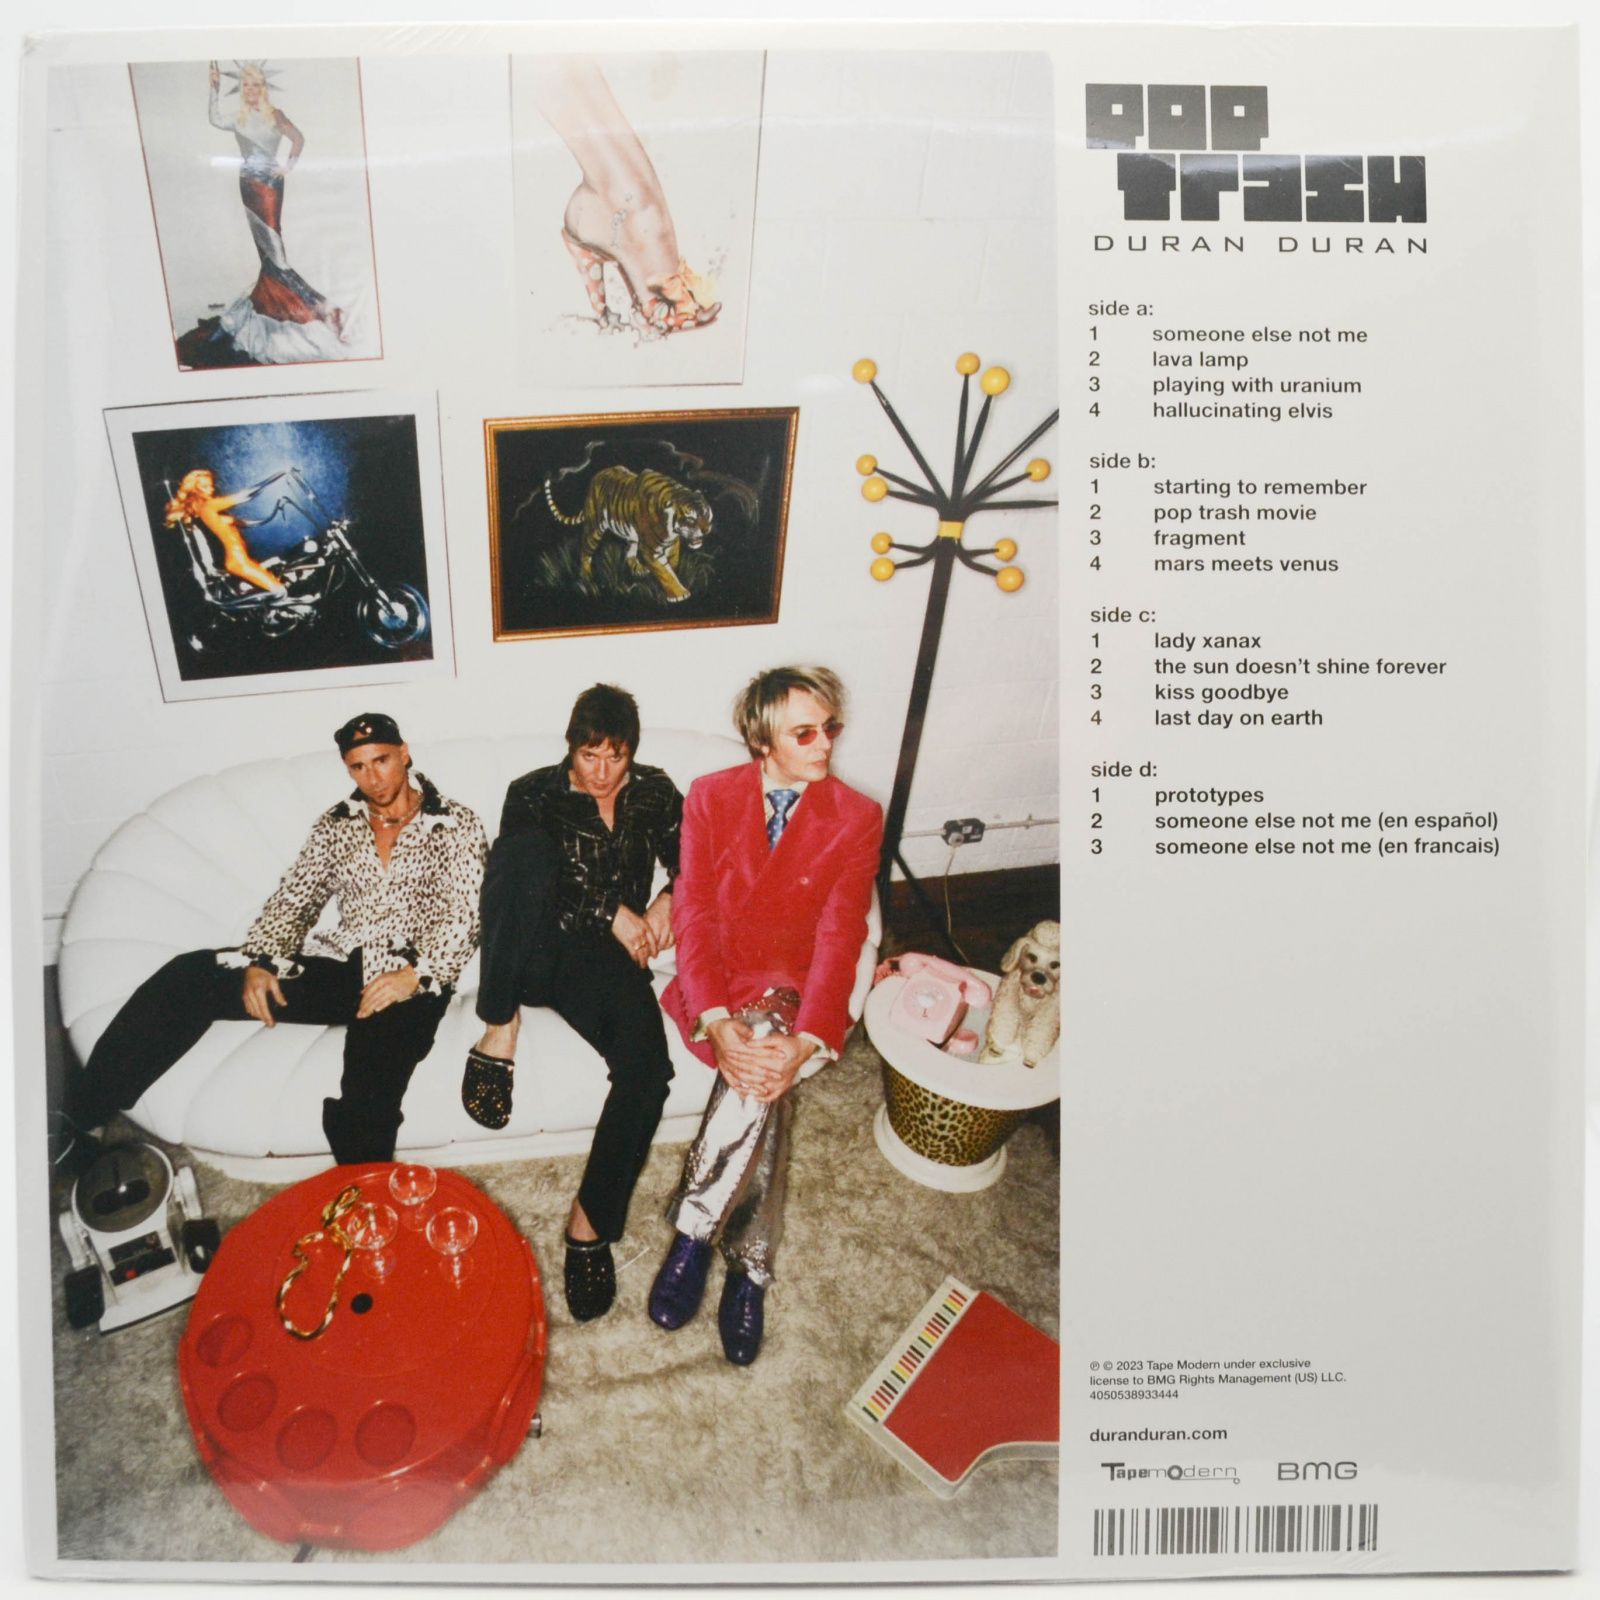 Duran Duran — Pop Trash (2LP), 2000